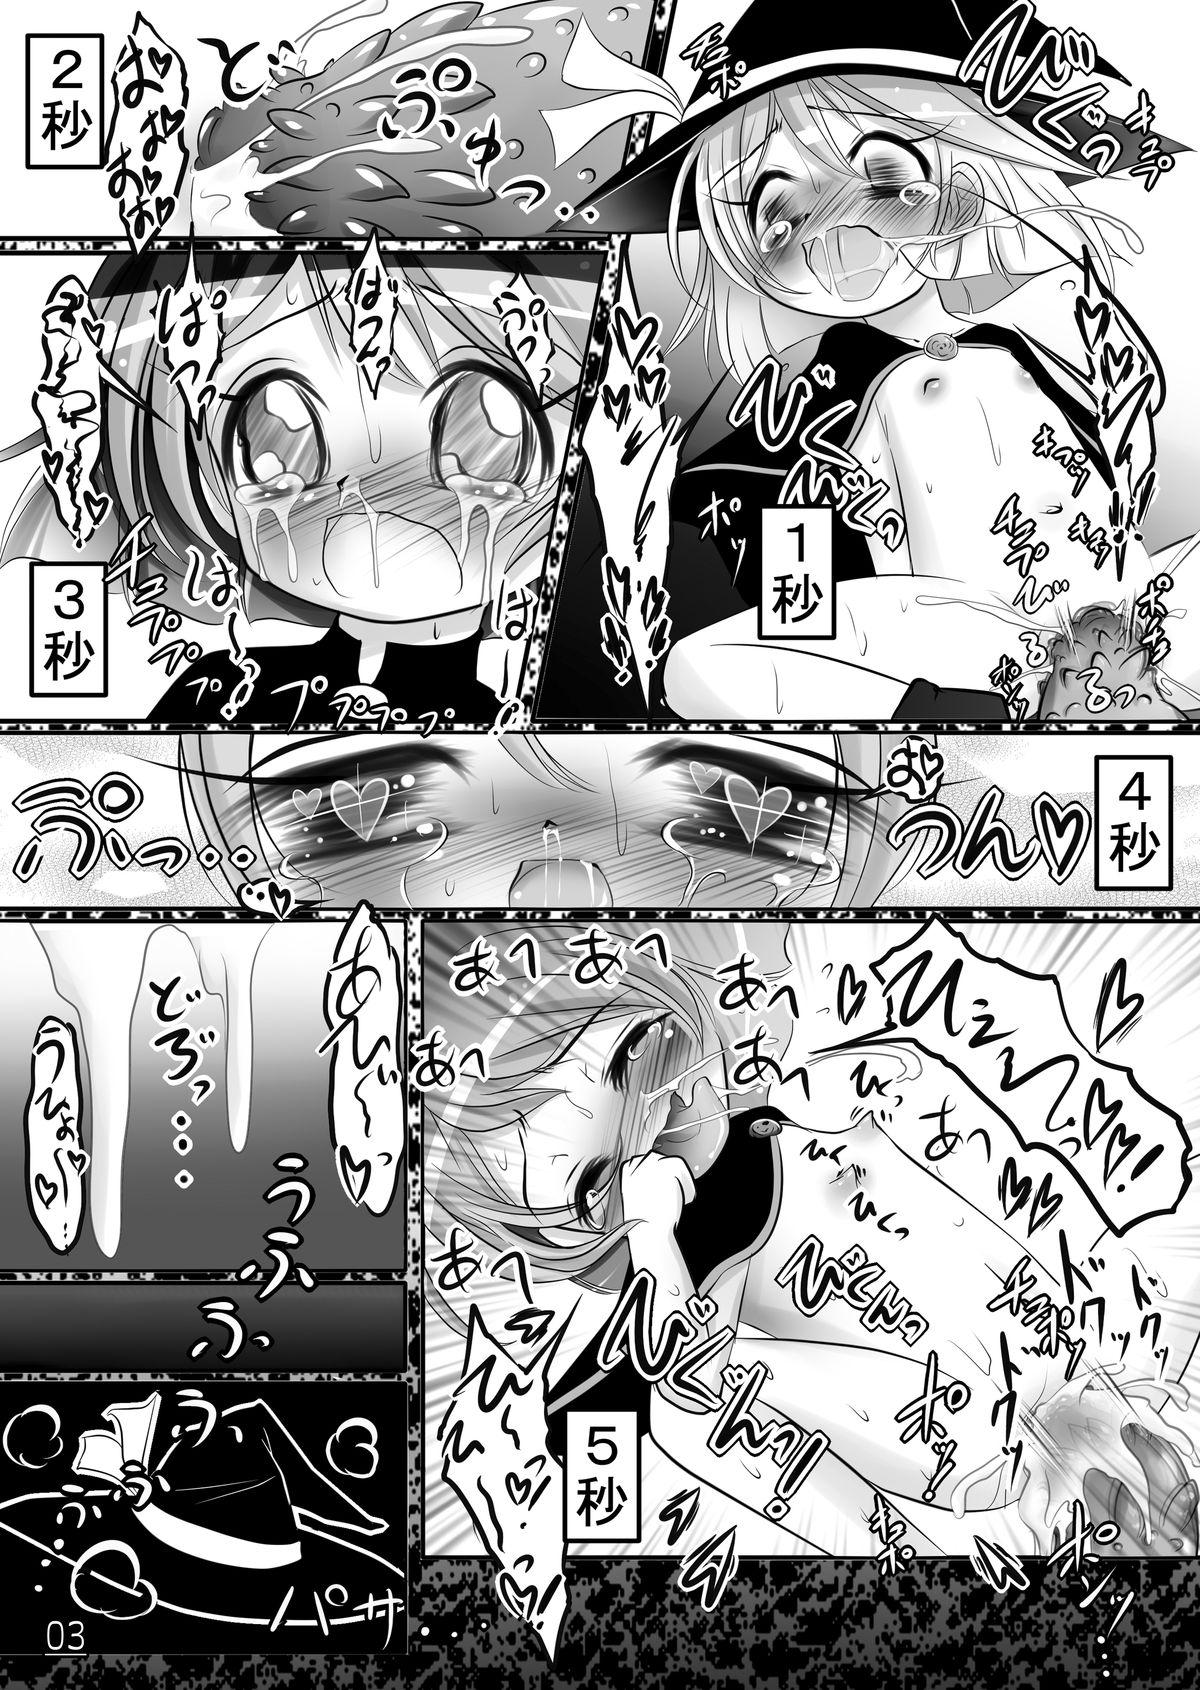 Ecstasy Daizukan! Vol. 1 4